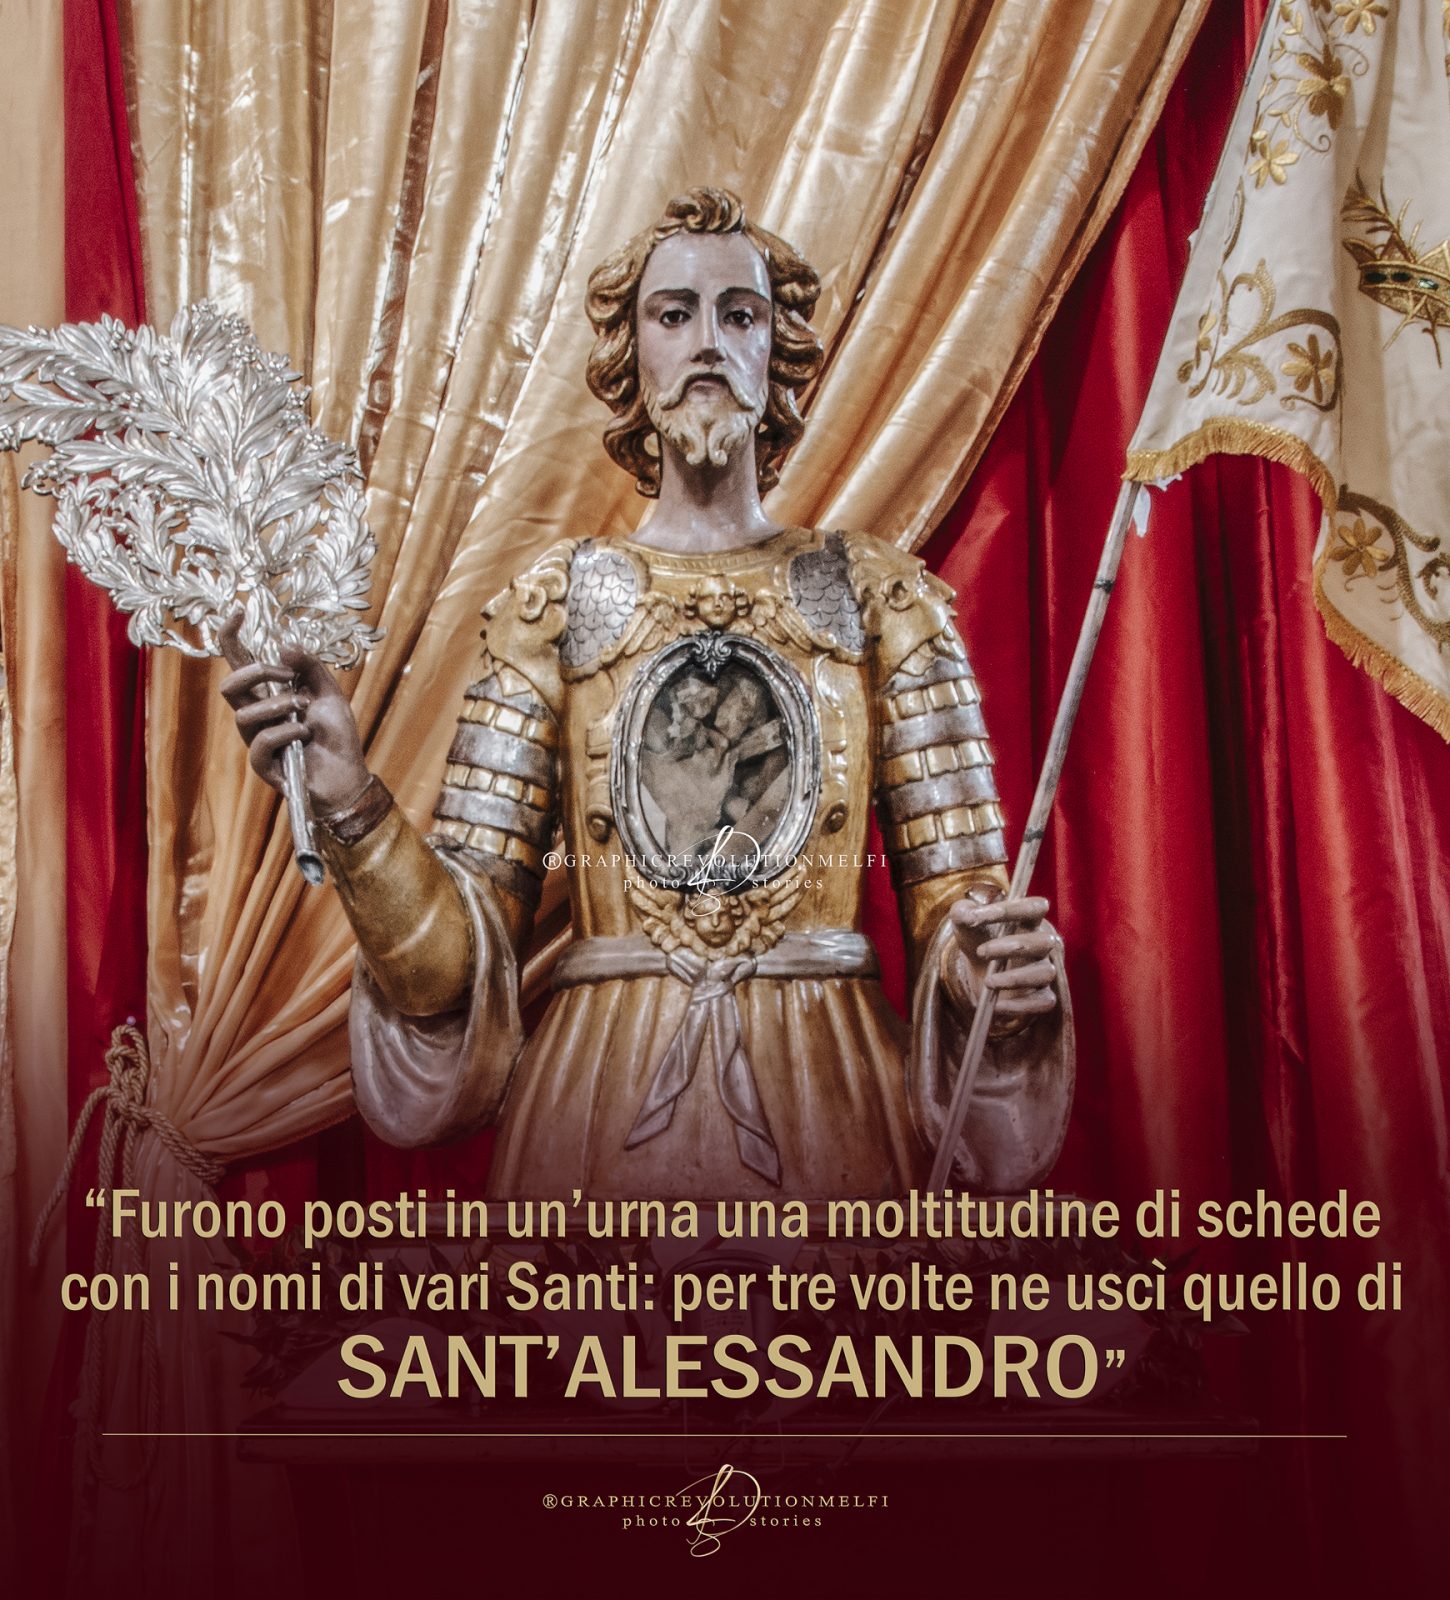 La festa di Sant'Alessandro occasione per nuove vie di dialogo